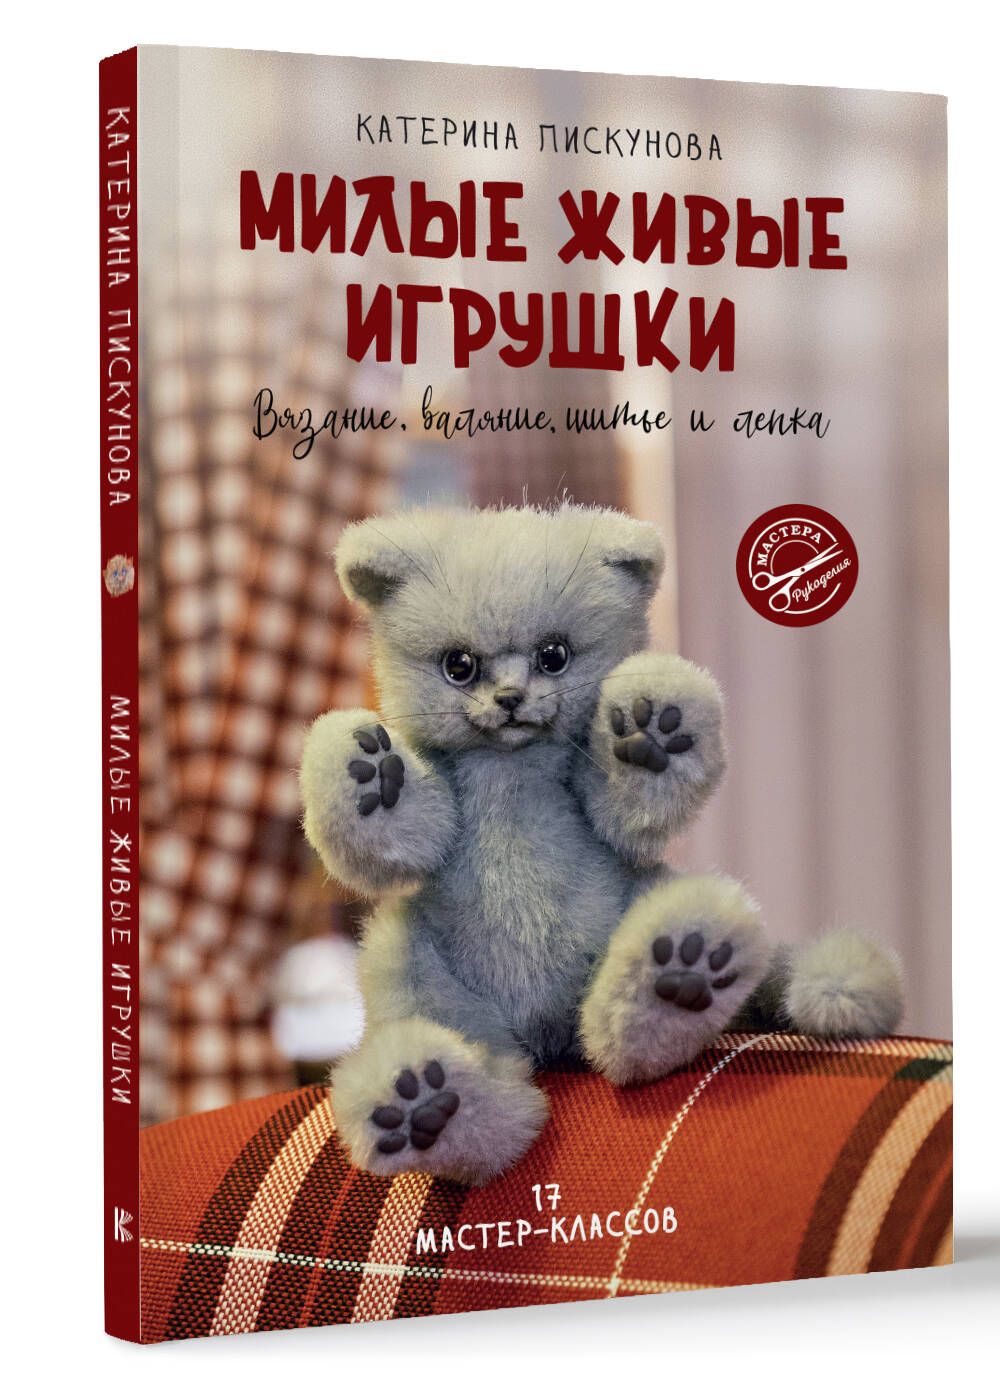 Книги по изготовлению игрушек и кукол купить в интернет-магазине Леонардо Беларусь